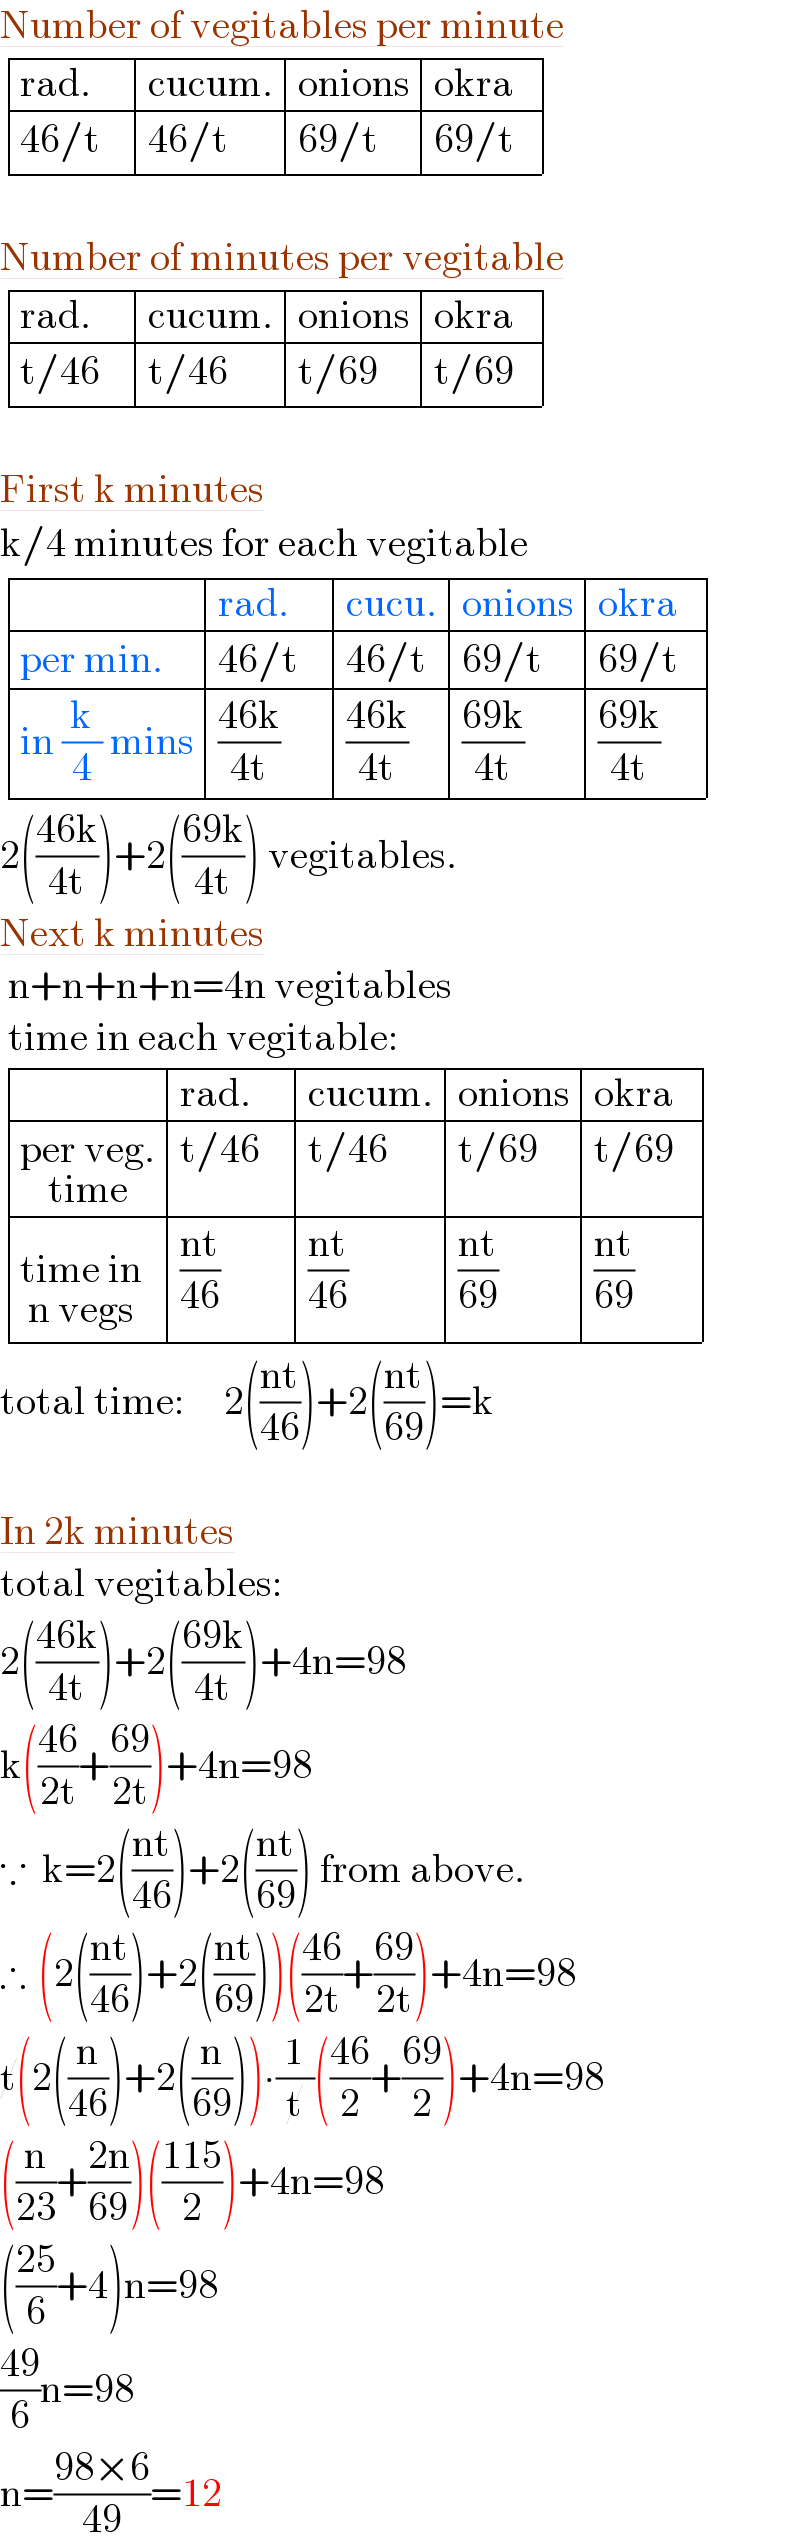 Number of vegitables per minute   determinant (((rad.    ),(cucum.),(onions),(okra  )),((46/t),(46/t),(69/t),(69/t)))     Number of minutes per vegitable   determinant (((rad.    ),(cucum.),(onions),(okra  )),((t/46),(t/46),(t/69),(t/69)))     First k minutes  k/4 minutes for each vegitable   determinant ((,(rad.    ),(cucu.),(onions),(okra  )),((per min.),(46/t),(46/t),(69/t),(69/t)),((in (k/4) mins),((46k)/(4t)),((46k)/(4t)),((69k)/(4t)),((69k)/(4t))))   2(((46k)/(4t)))+2(((69k)/(4t))) vegitables.  Next k minutes   n+n+n+n=4n vegitables   time in each vegitable:   determinant ((,(rad.    ),(cucum.),(onions),(okra  )),((per veg._(time) ),(t/46),(t/46),(t/69),(t/69)),((time in_(n vegs) ),((nt)/(46)),((nt)/(46)),((nt)/(69)),((nt)/(69))))  total time:     2(((nt)/(46)))+2(((nt)/(69)))=k     In 2k minutes  total vegitables:  2(((46k)/(4t)))+2(((69k)/(4t)))+4n=98  k(((46)/(2t))+((69)/(2t)))+4n=98   ∵  k=2(((nt)/(46)))+2(((nt)/(69))) from above.  ∴  (2(((nt)/(46)))+2(((nt)/(69))))(((46)/(2t))+((69)/(2t)))+4n=98  t(2((n/(46)))+2((n/(69))))∙(1/t)(((46)/2)+((69)/2))+4n=98  ((n/(23))+((2n)/(69)))(((115)/2))+4n=98  (((25)/6)+4)n=98  ((49)/6)n=98  n=((98×6)/(49))=12  